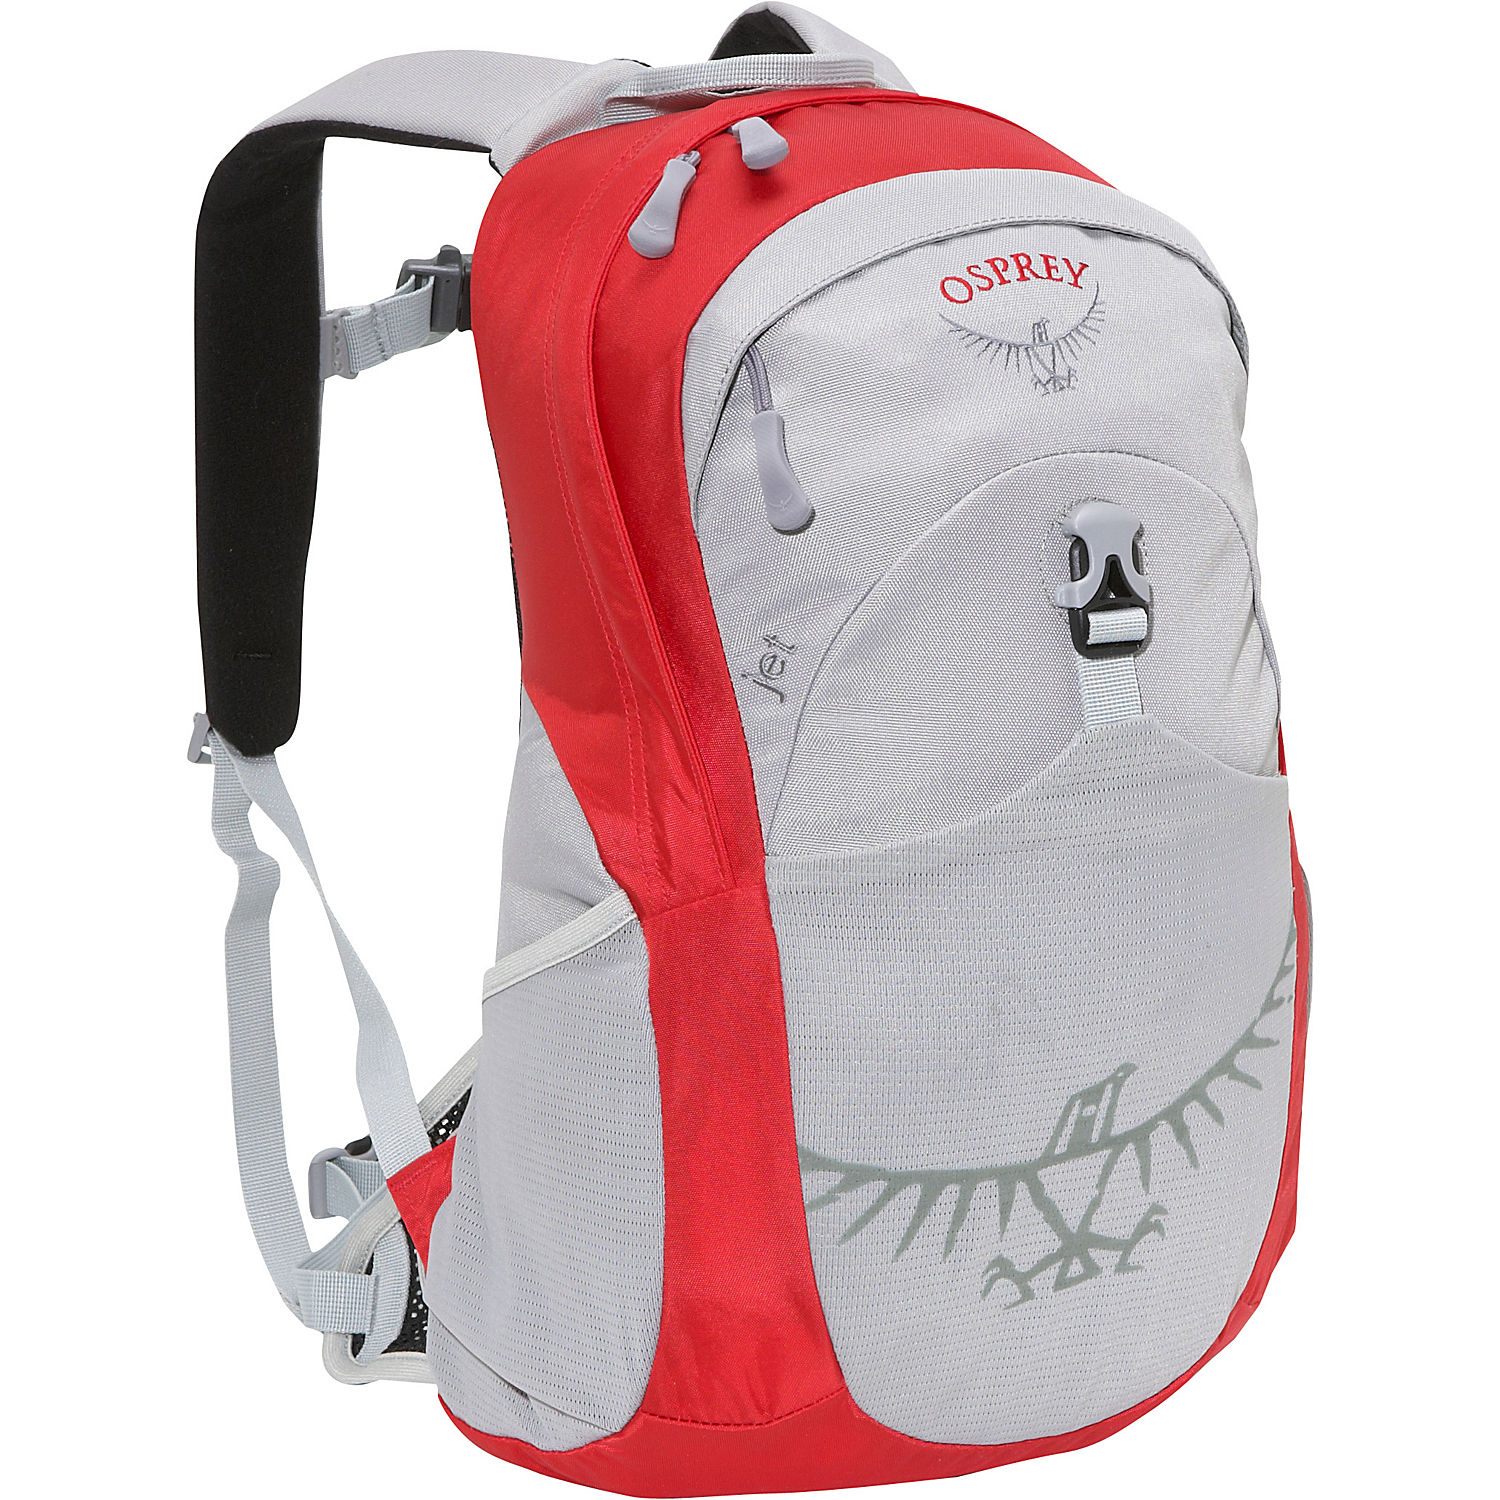 Osprey - Городской рюкзак для детей Рюкзак Jet 18